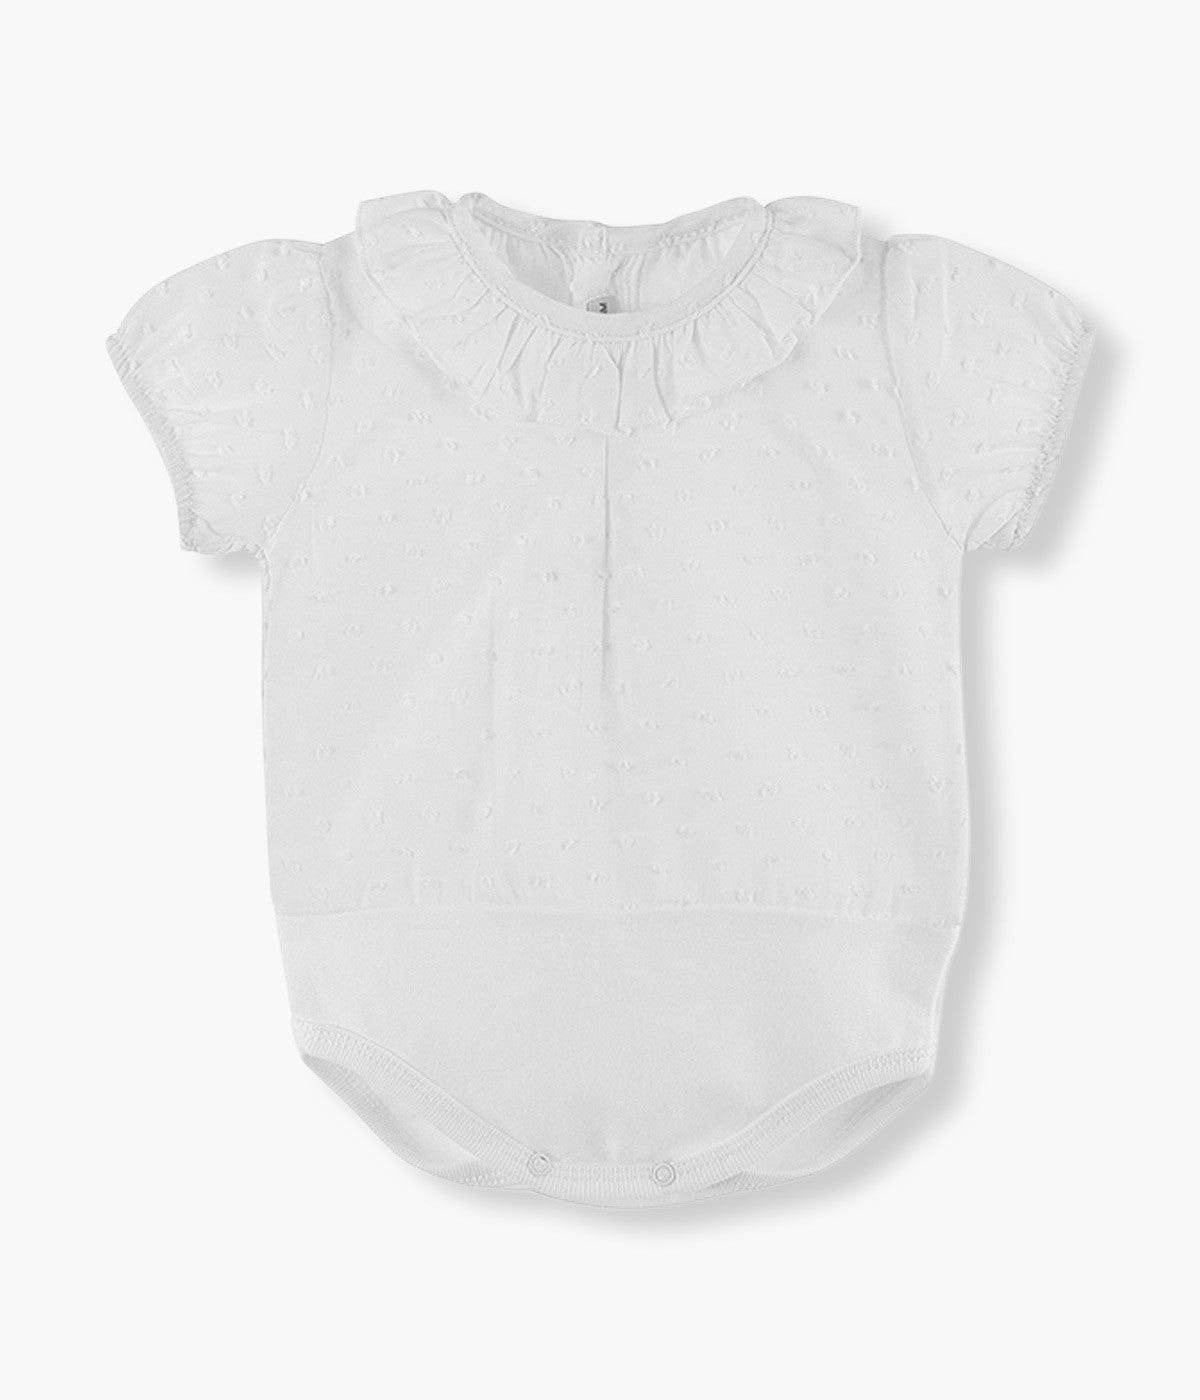 Body Camisa em Algodão Manga Curta Gola Folho para Bebé - Branco